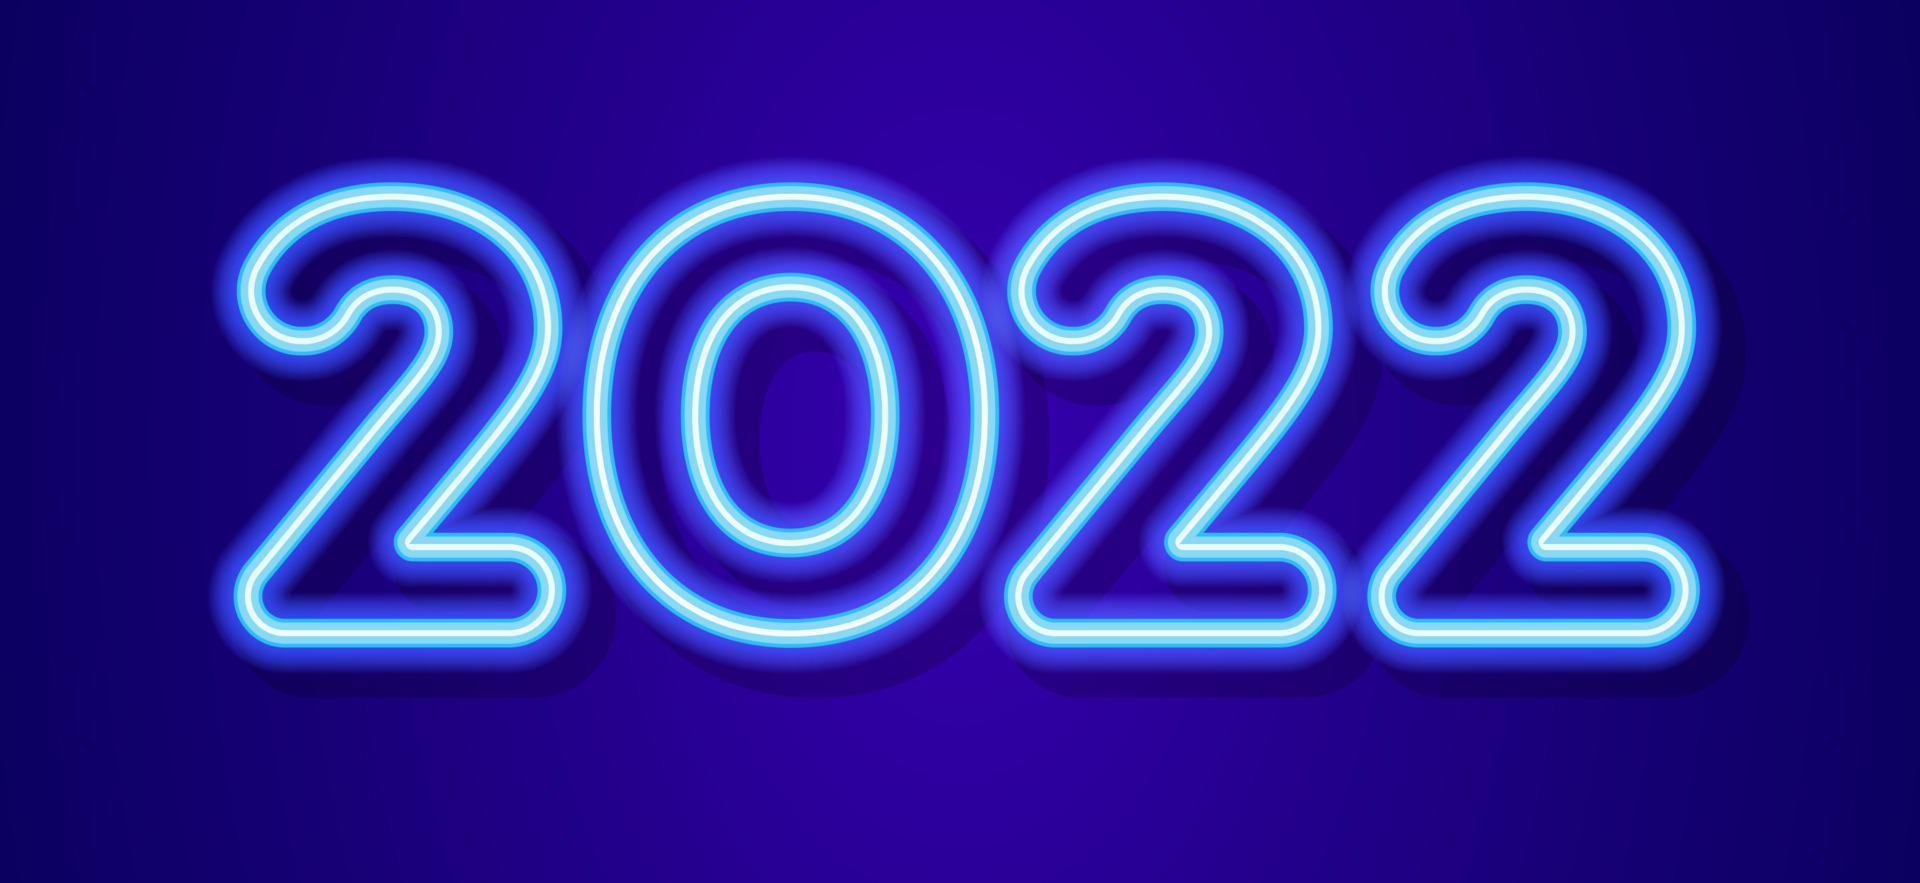 2022 signo estilo neón para tarjeta de felicitación de navidad vector